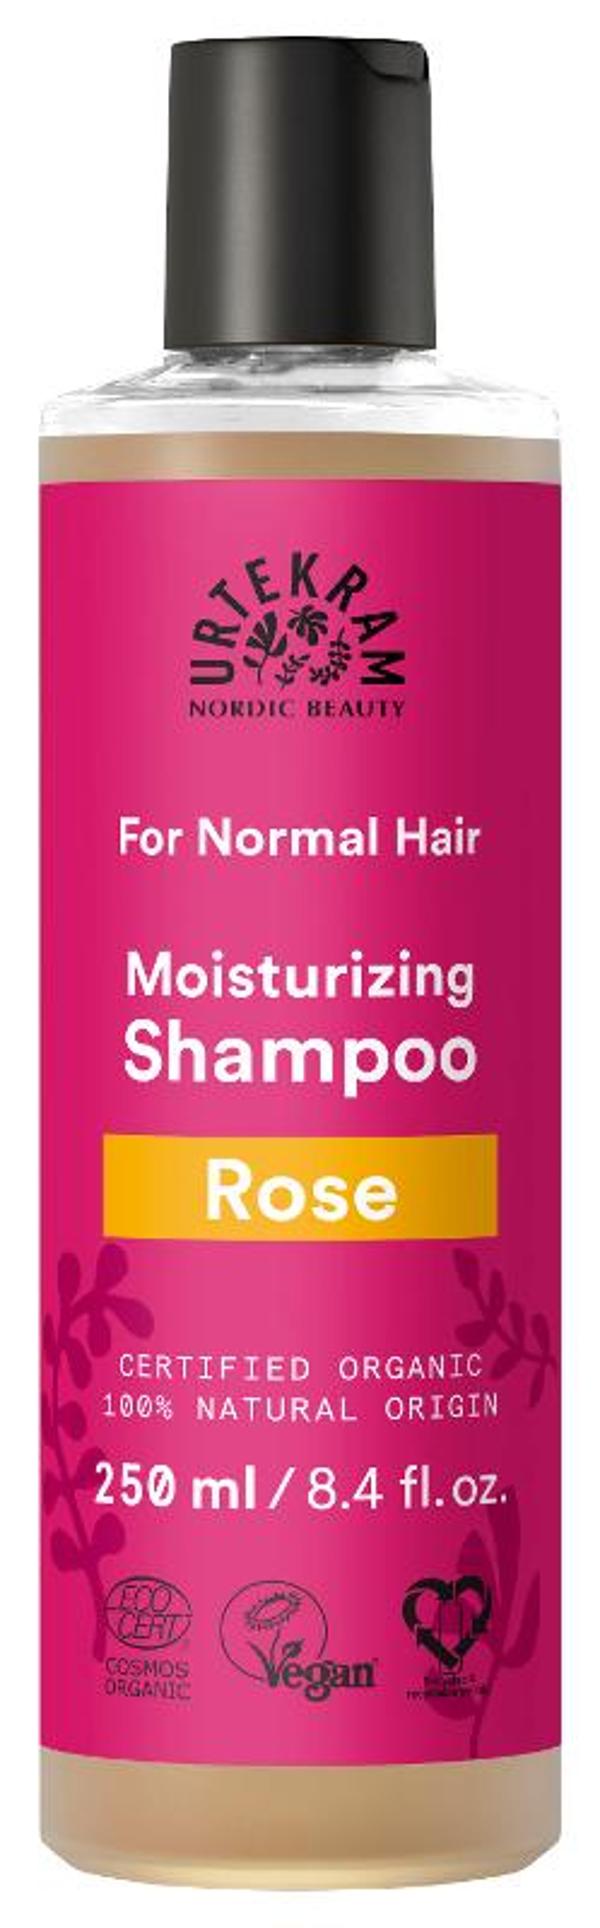 Produktfoto zu Rose Shampoo 250ml Urtekram